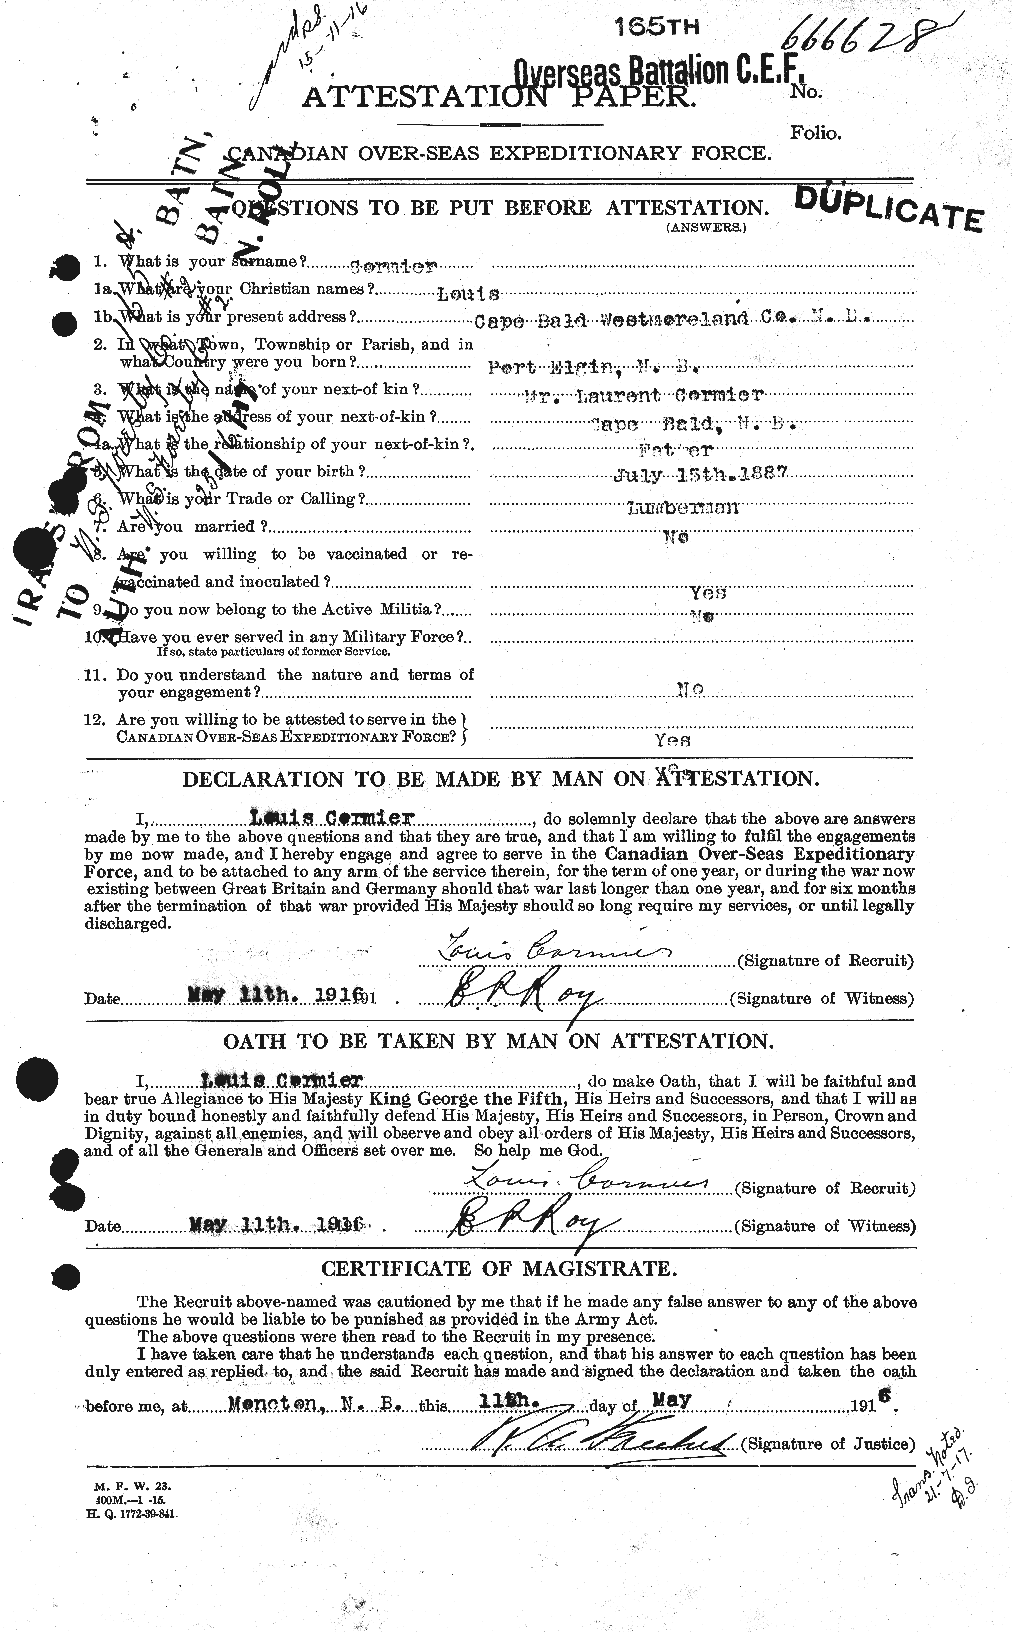 Dossiers du Personnel de la Première Guerre mondiale - CEC 265051a